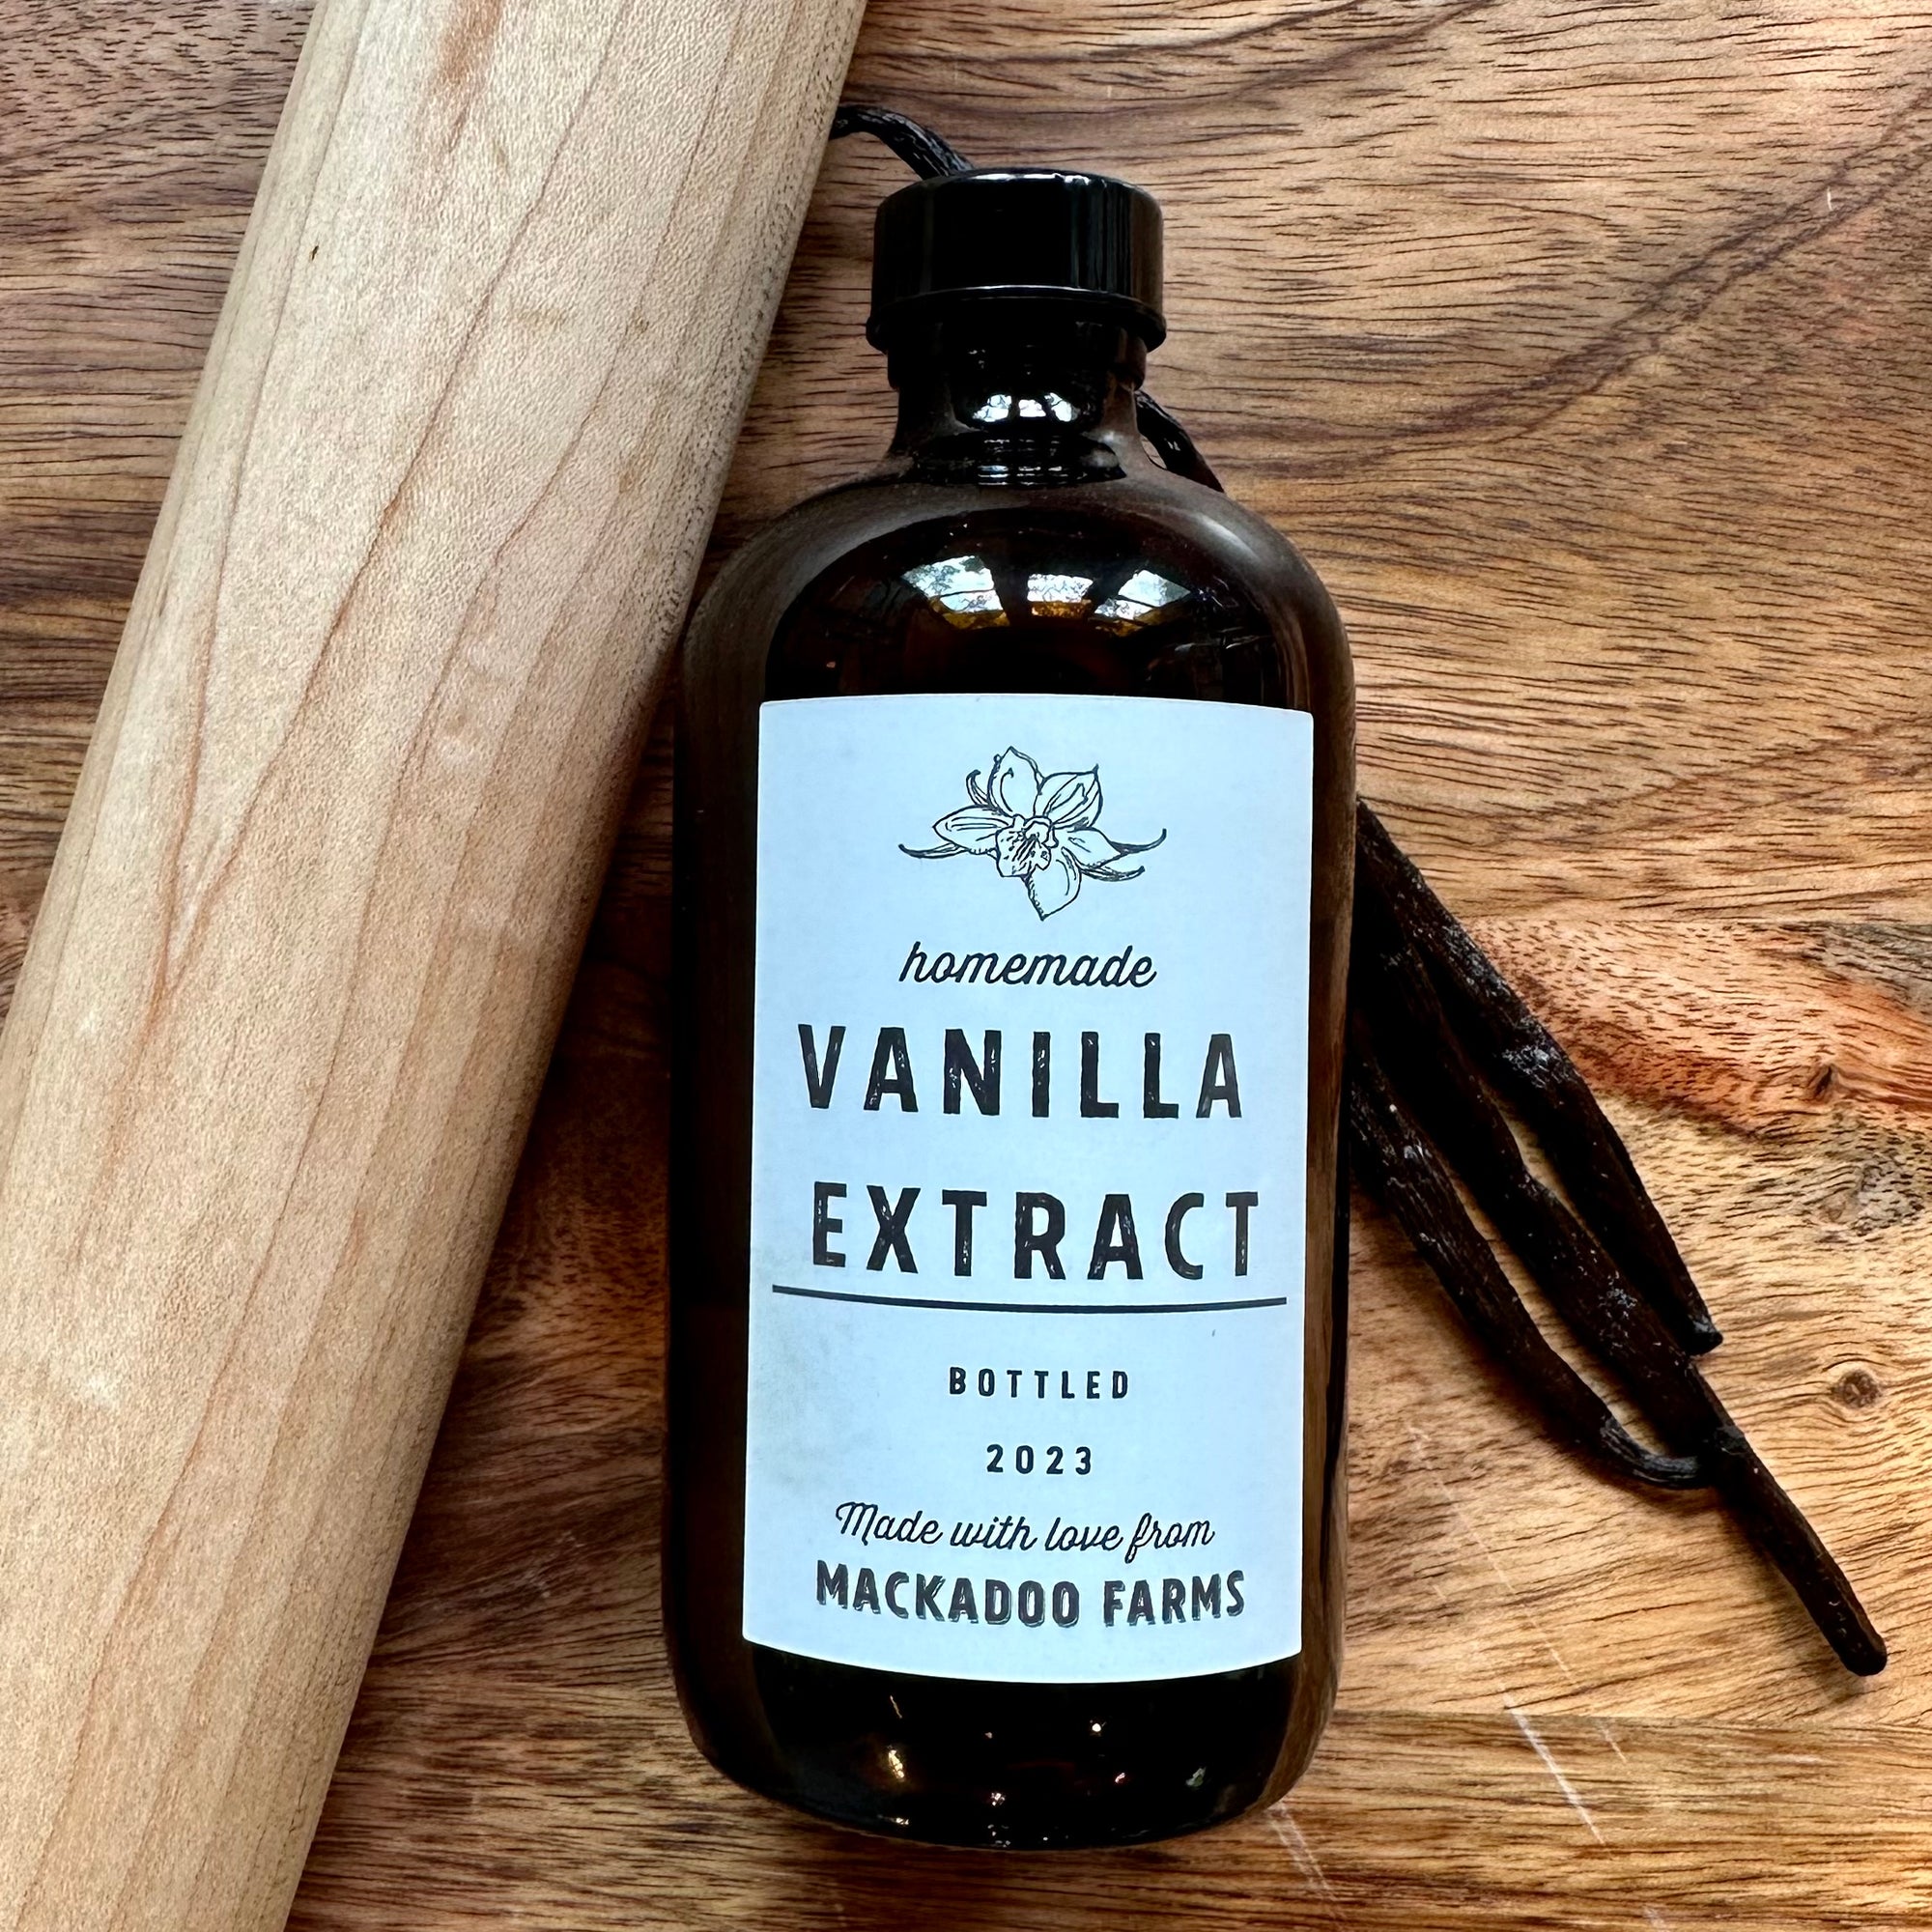 Homemade Madagascar Vanilla Extract